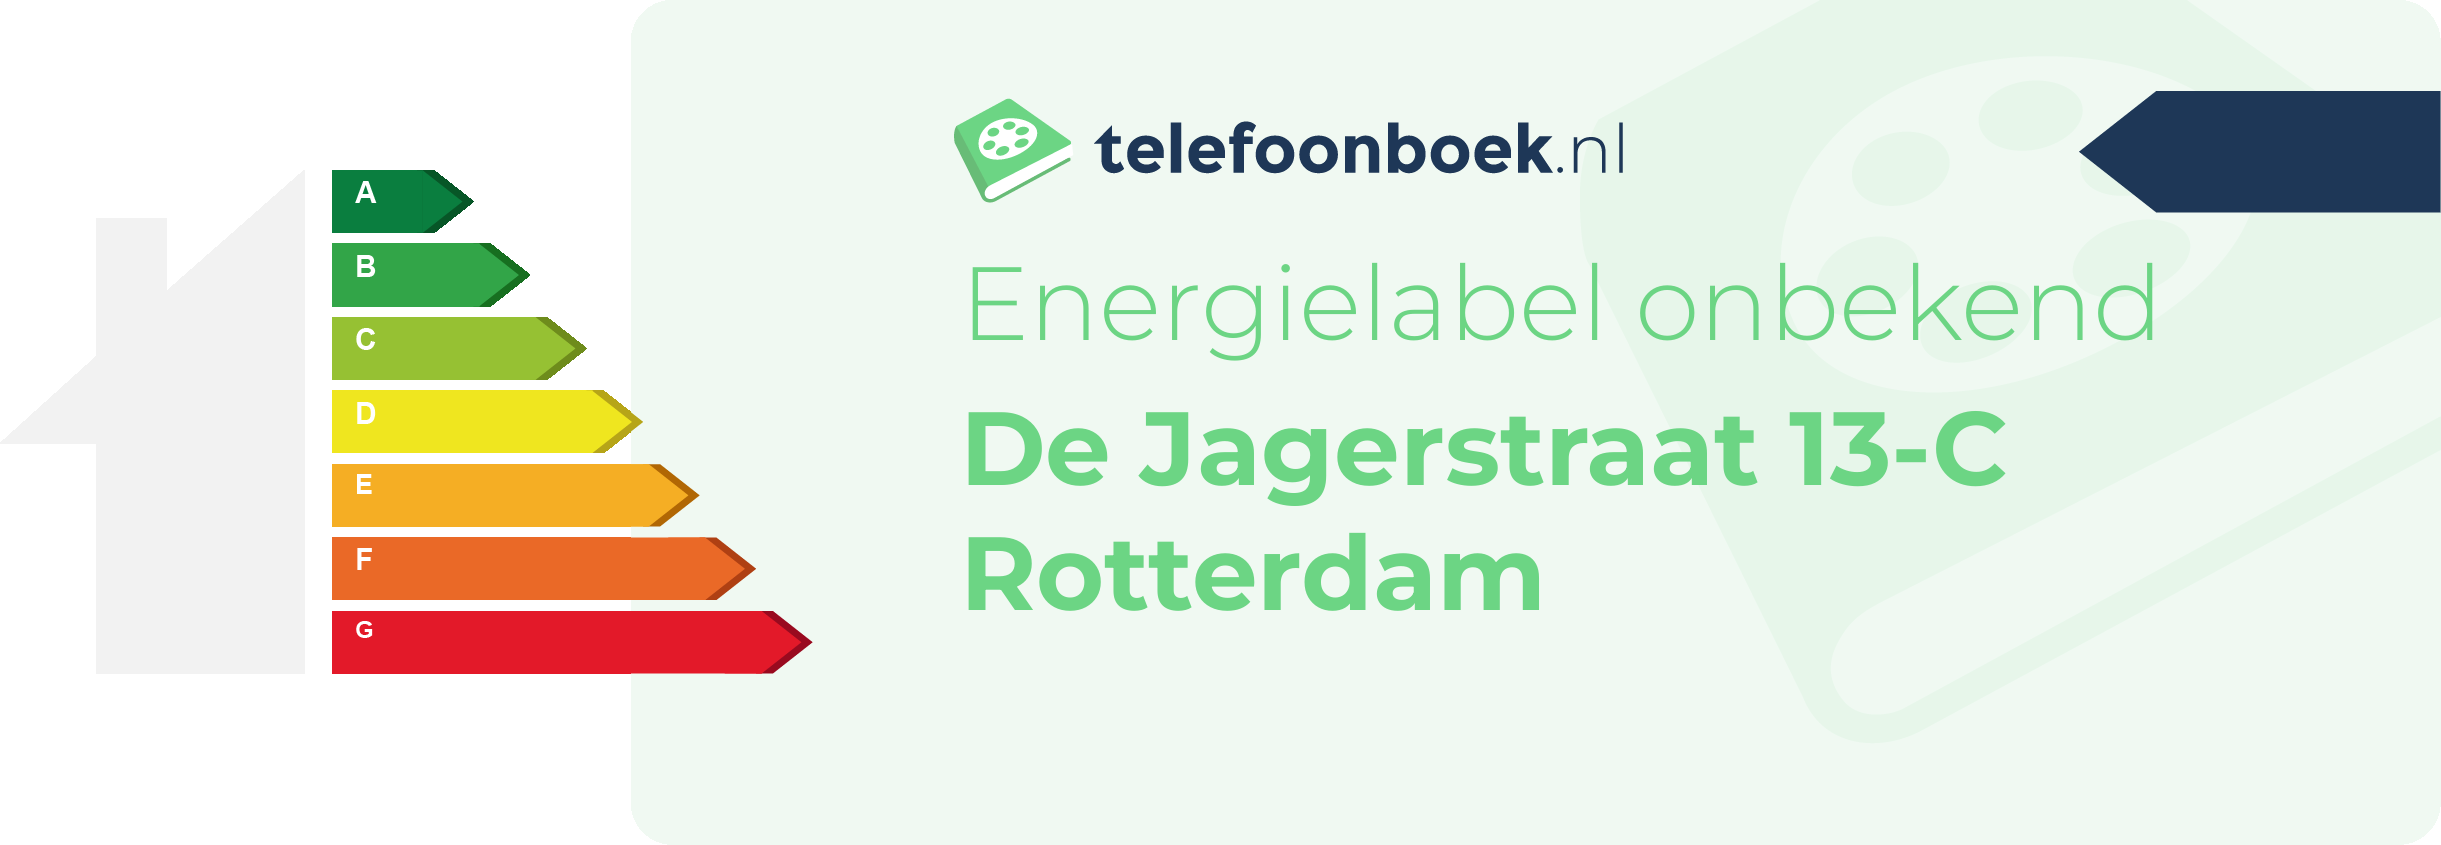 Energielabel De Jagerstraat 13-C Rotterdam